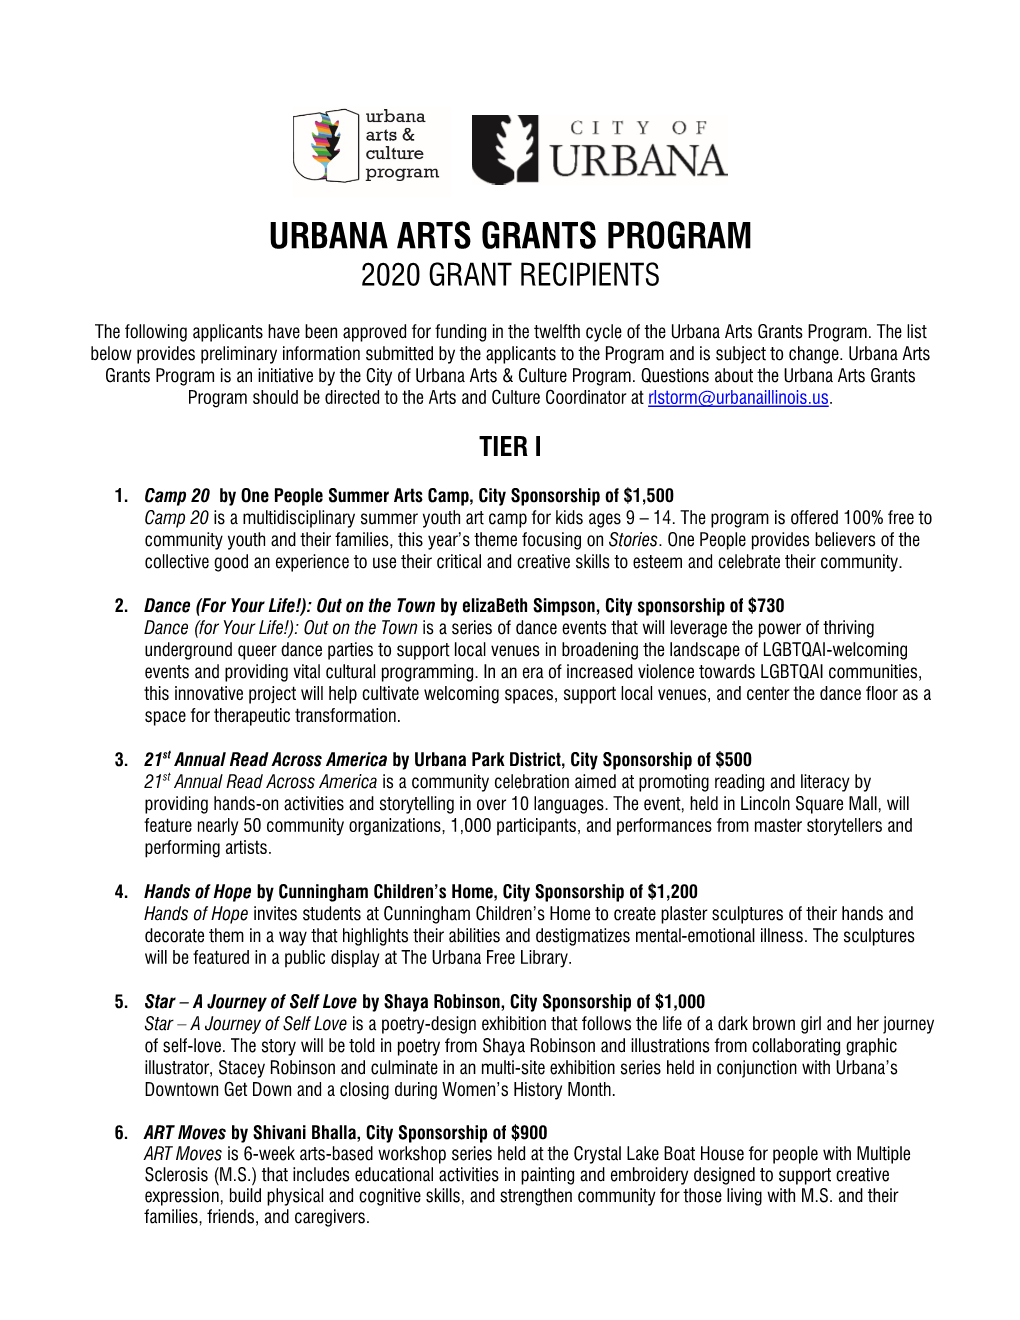 Urbana Arts Grants Program 2020 Grant Recipients